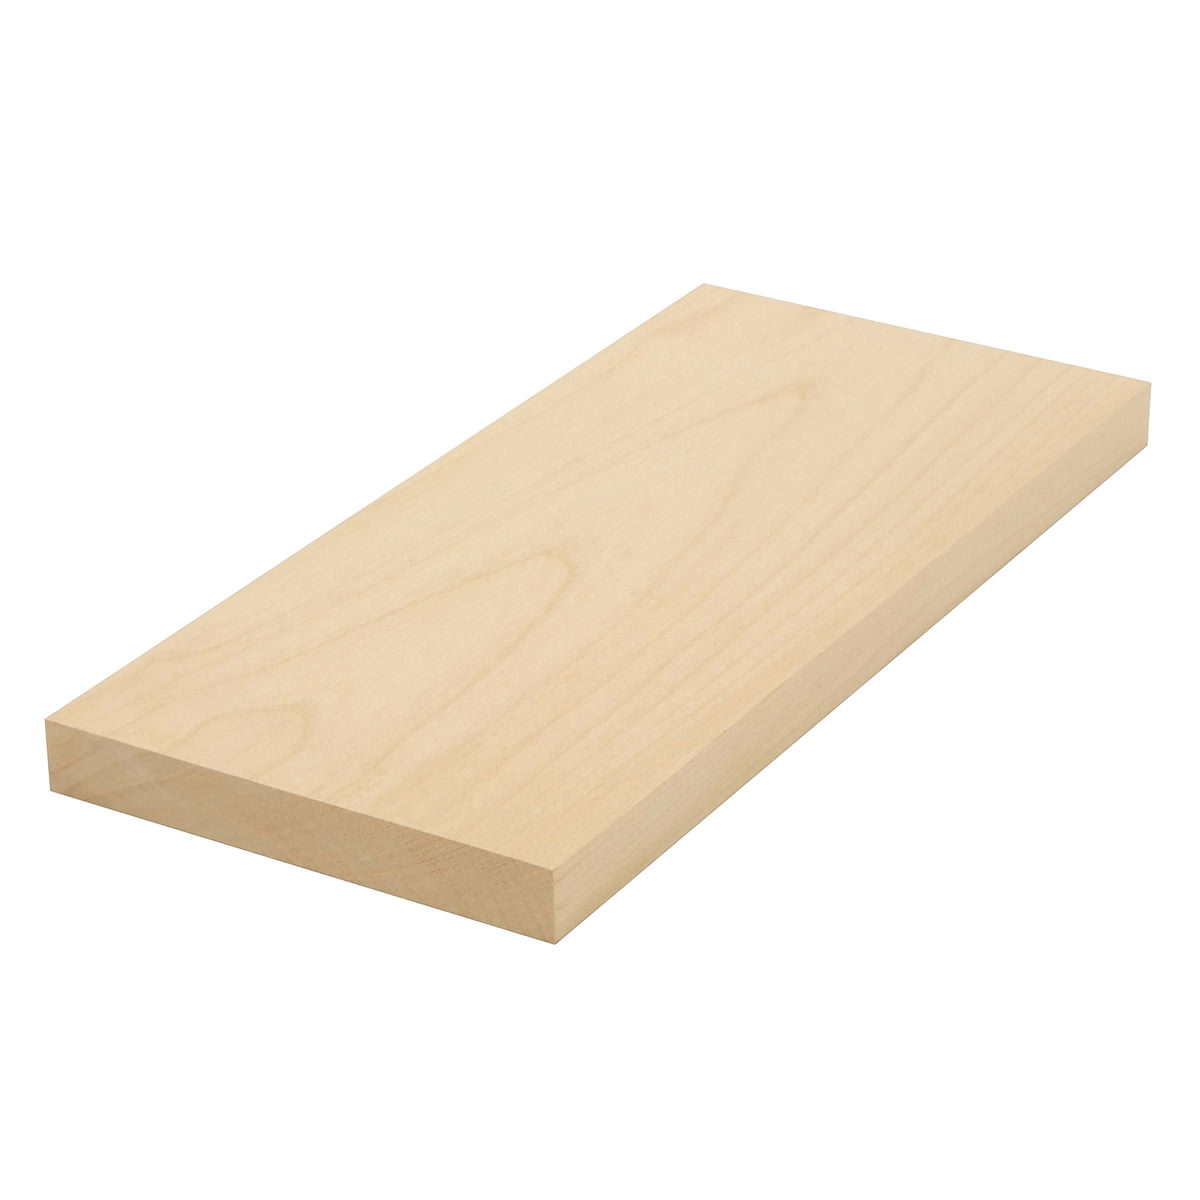 Wooden Plank/Board